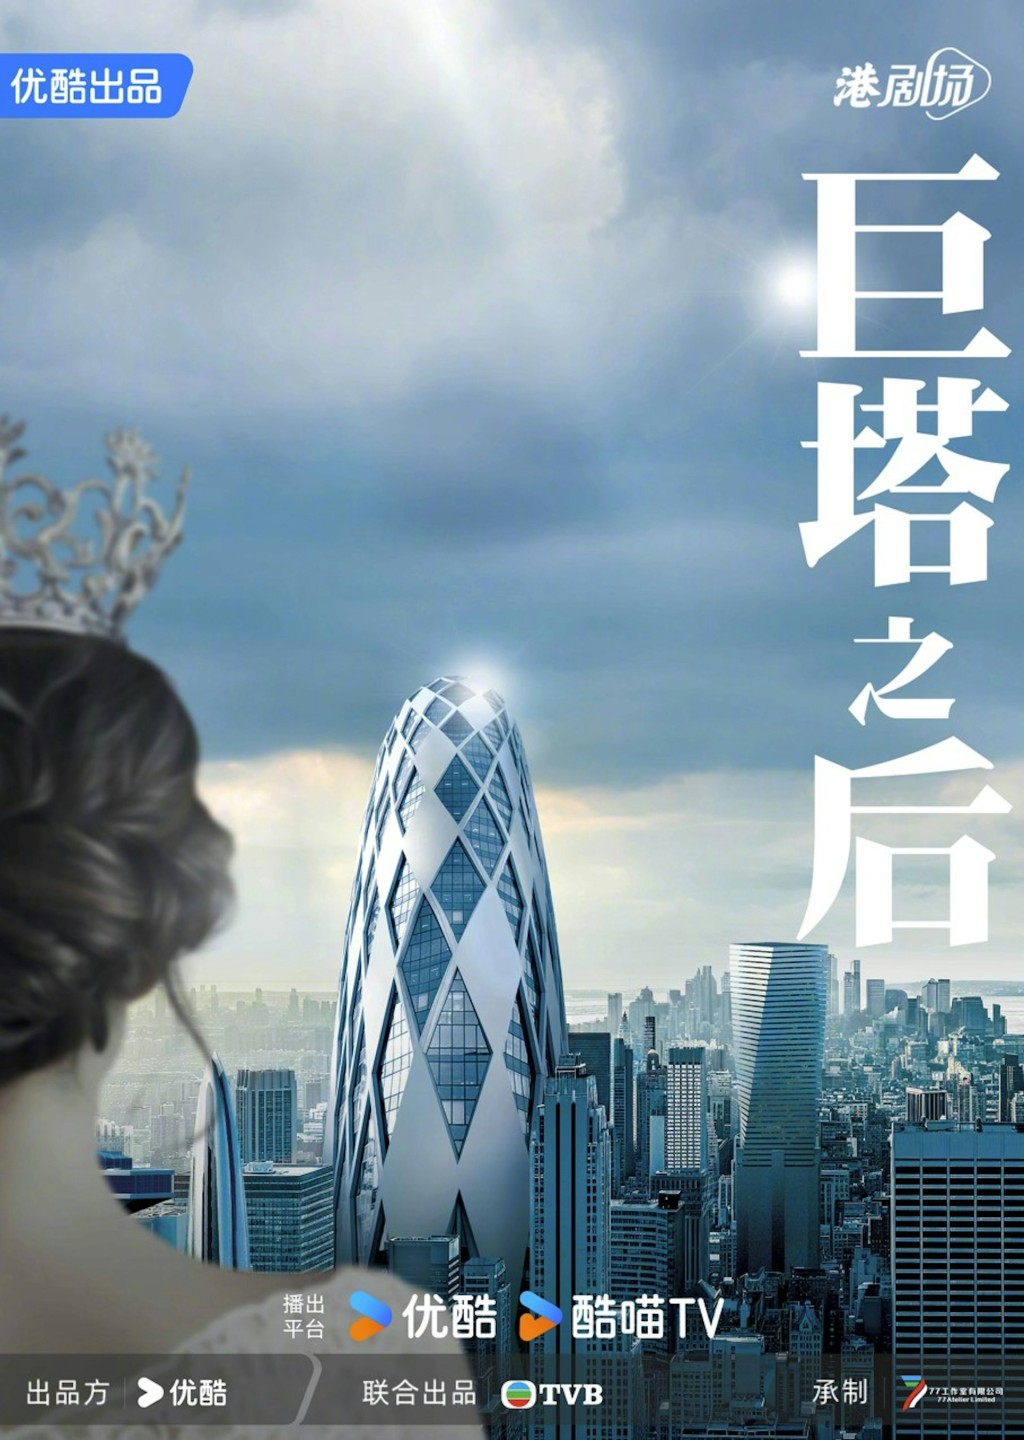 新剧《巨塔之后》被誉为医疗版《新闻女王》。